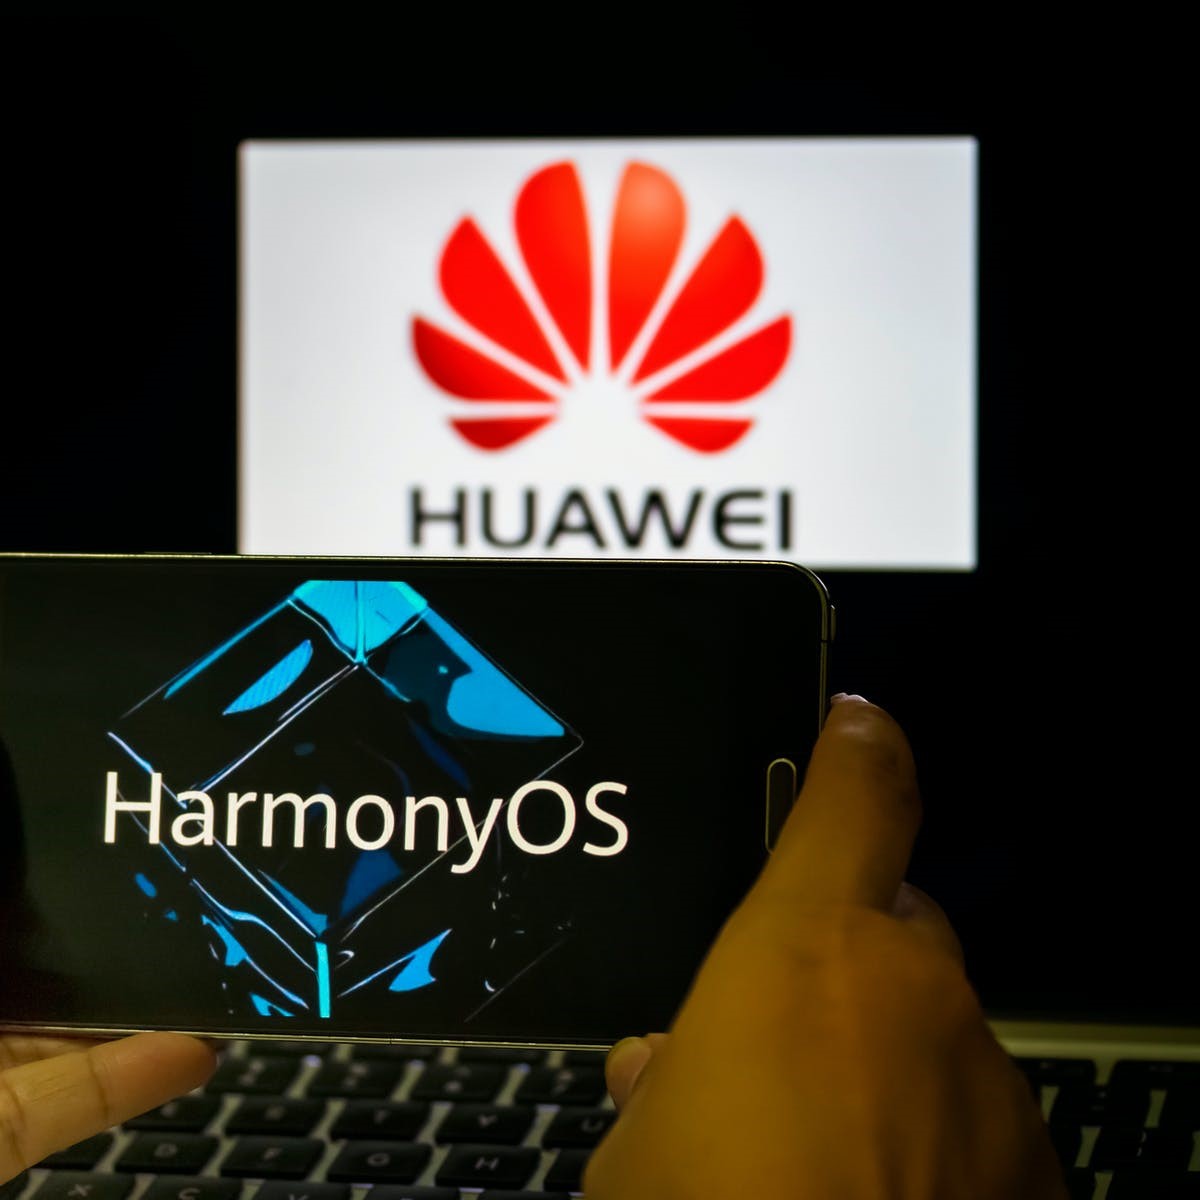 با قابلیت های امنیتی سیستم عامل HarmonyOS هواوی آشنا شوید